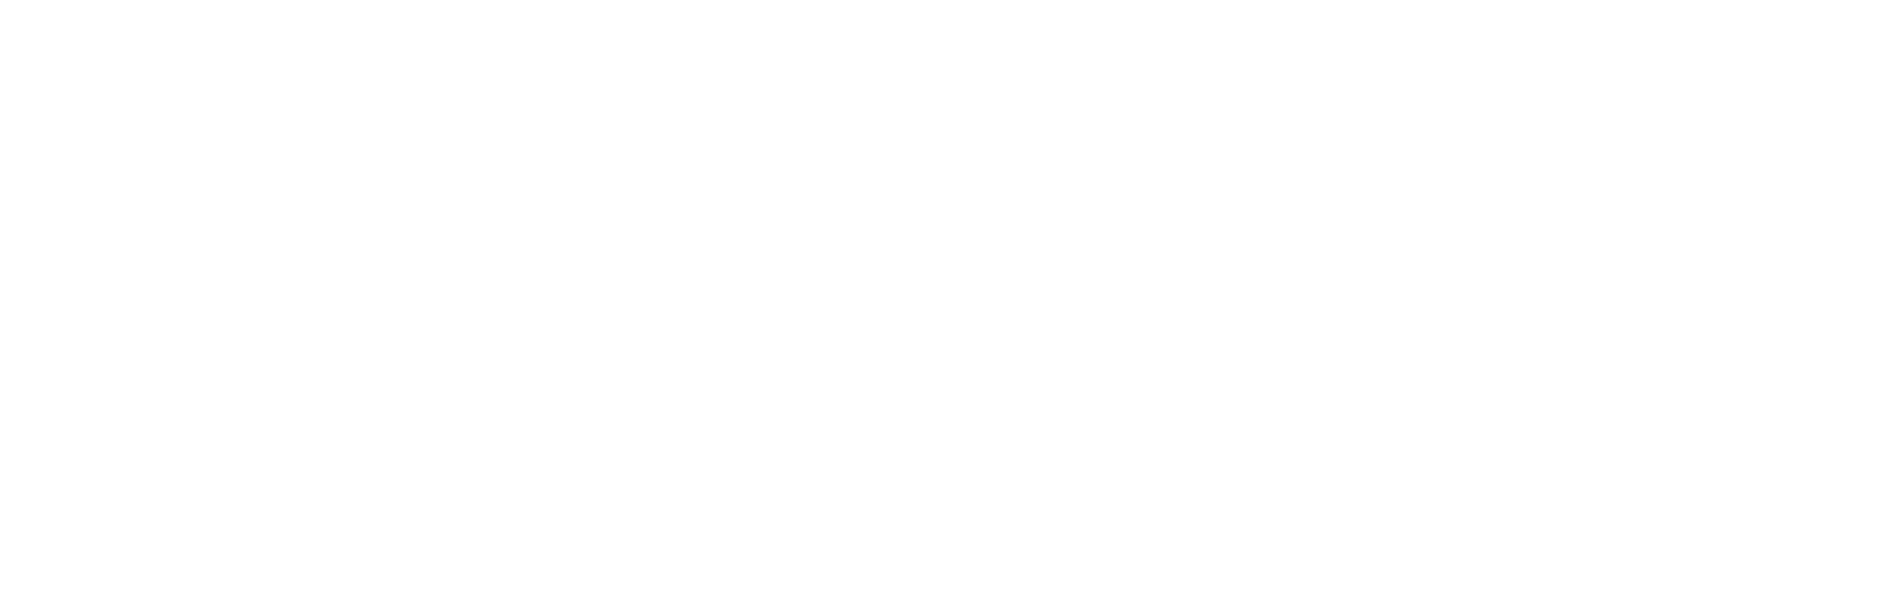 Celebrating 40 years